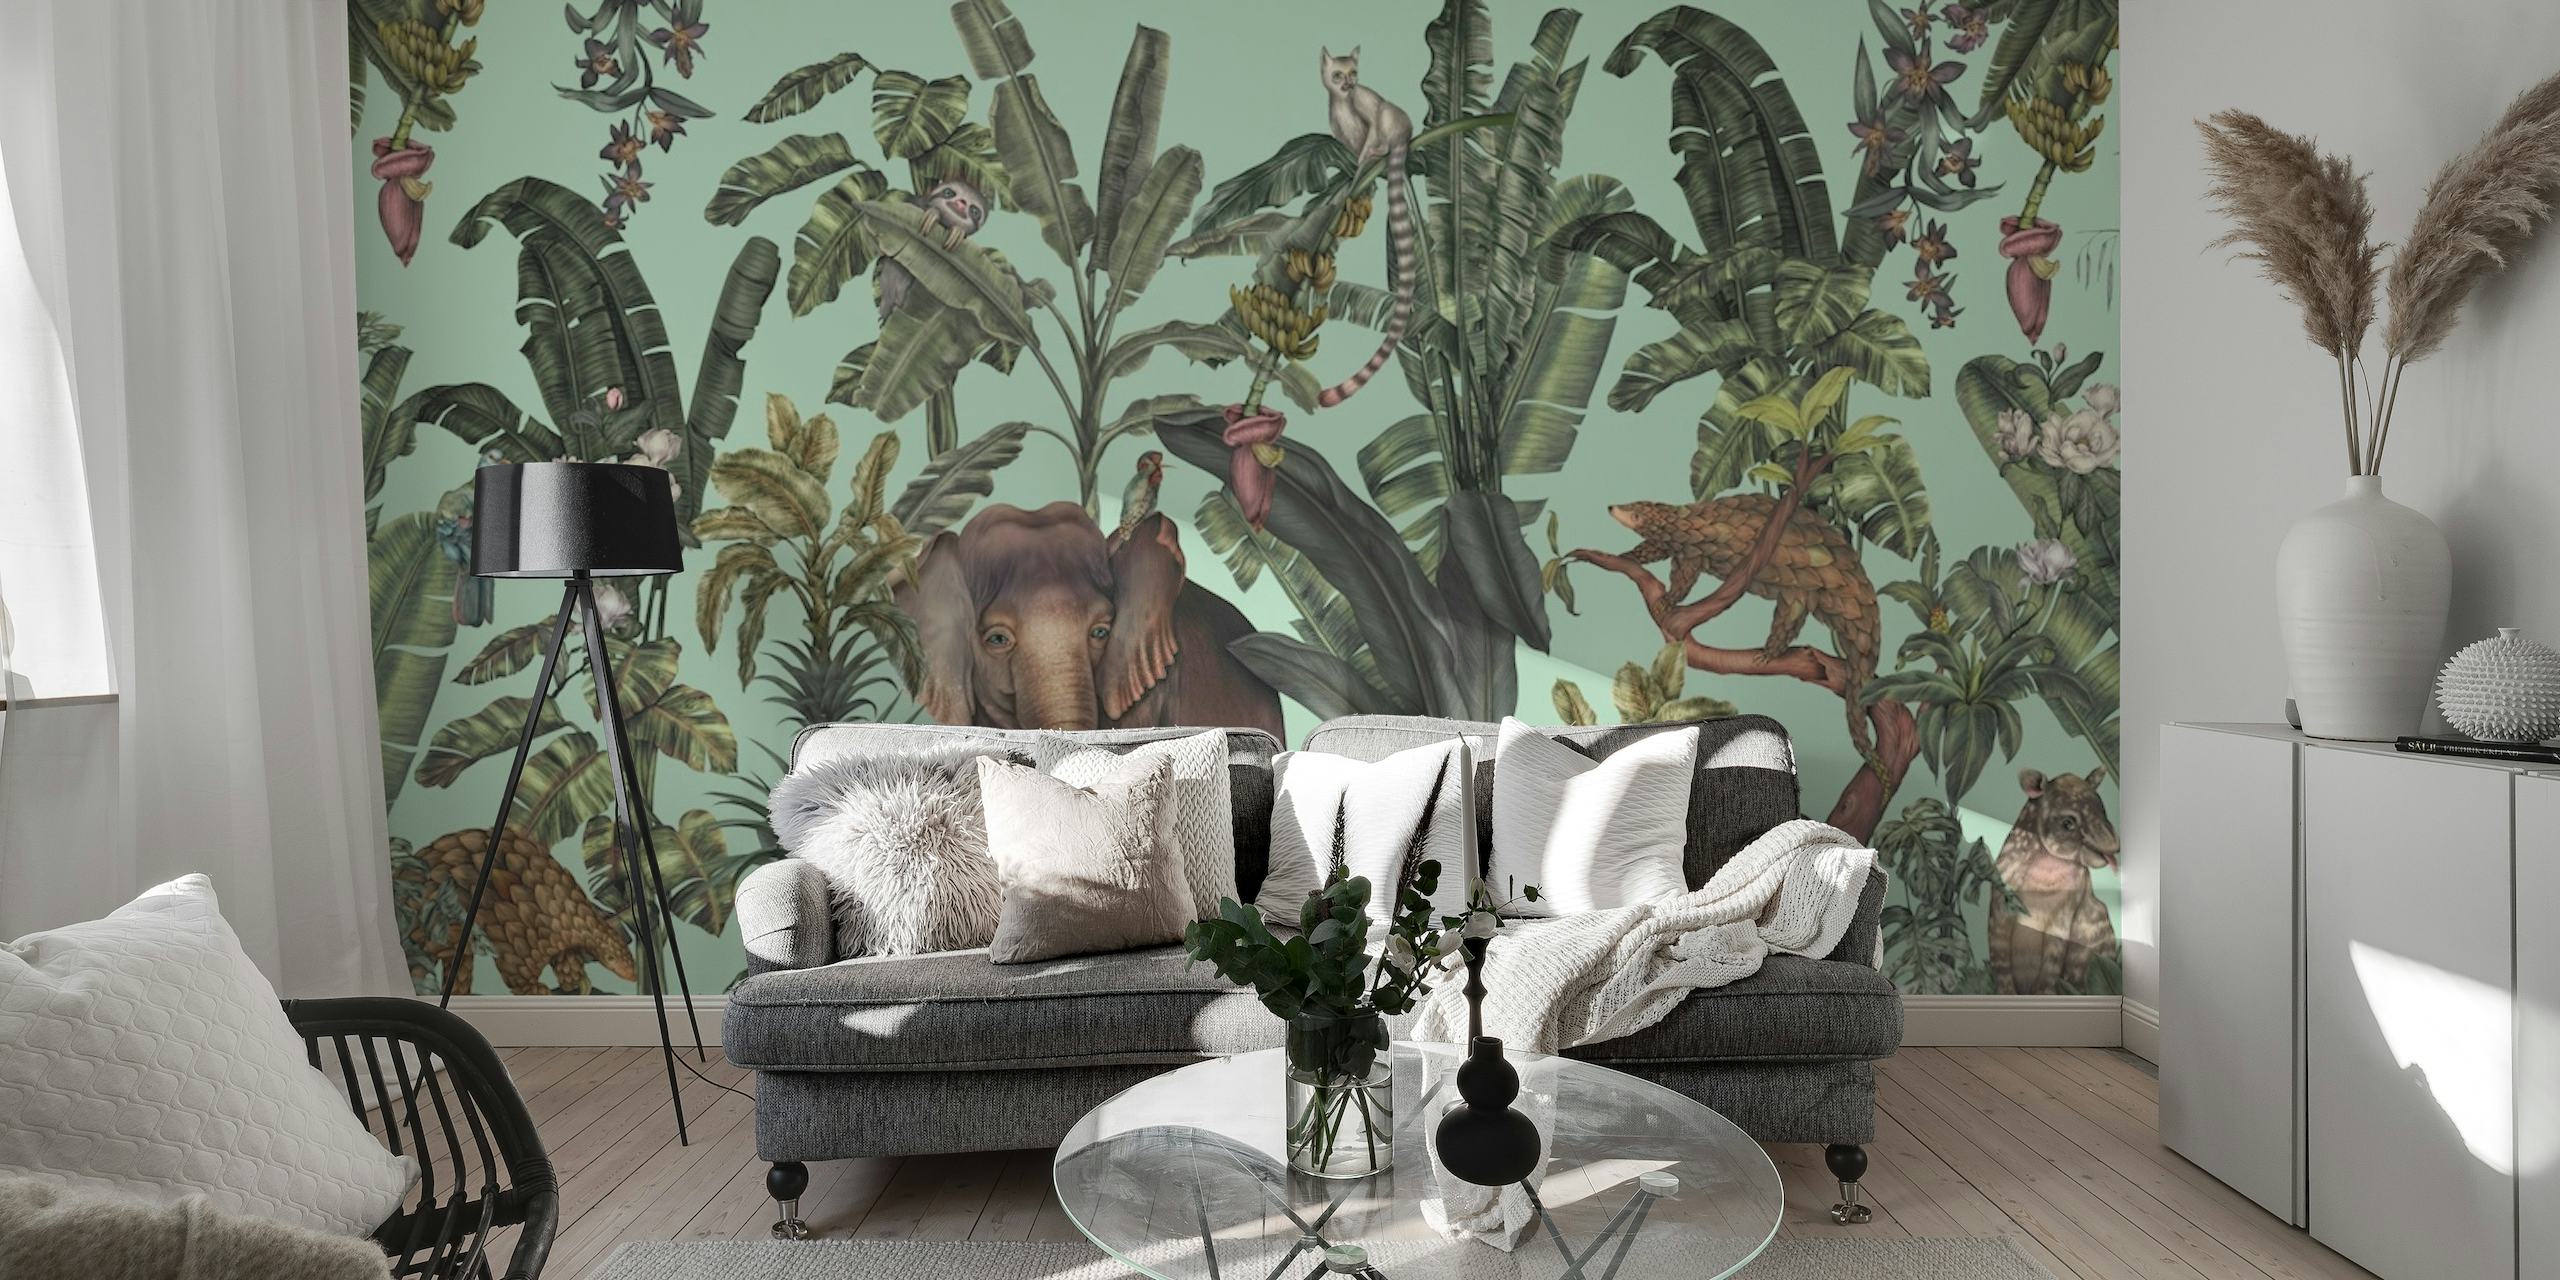 Mural de pared verde claro con temática de jungla que presenta flora tropical y vida silvestre escondida